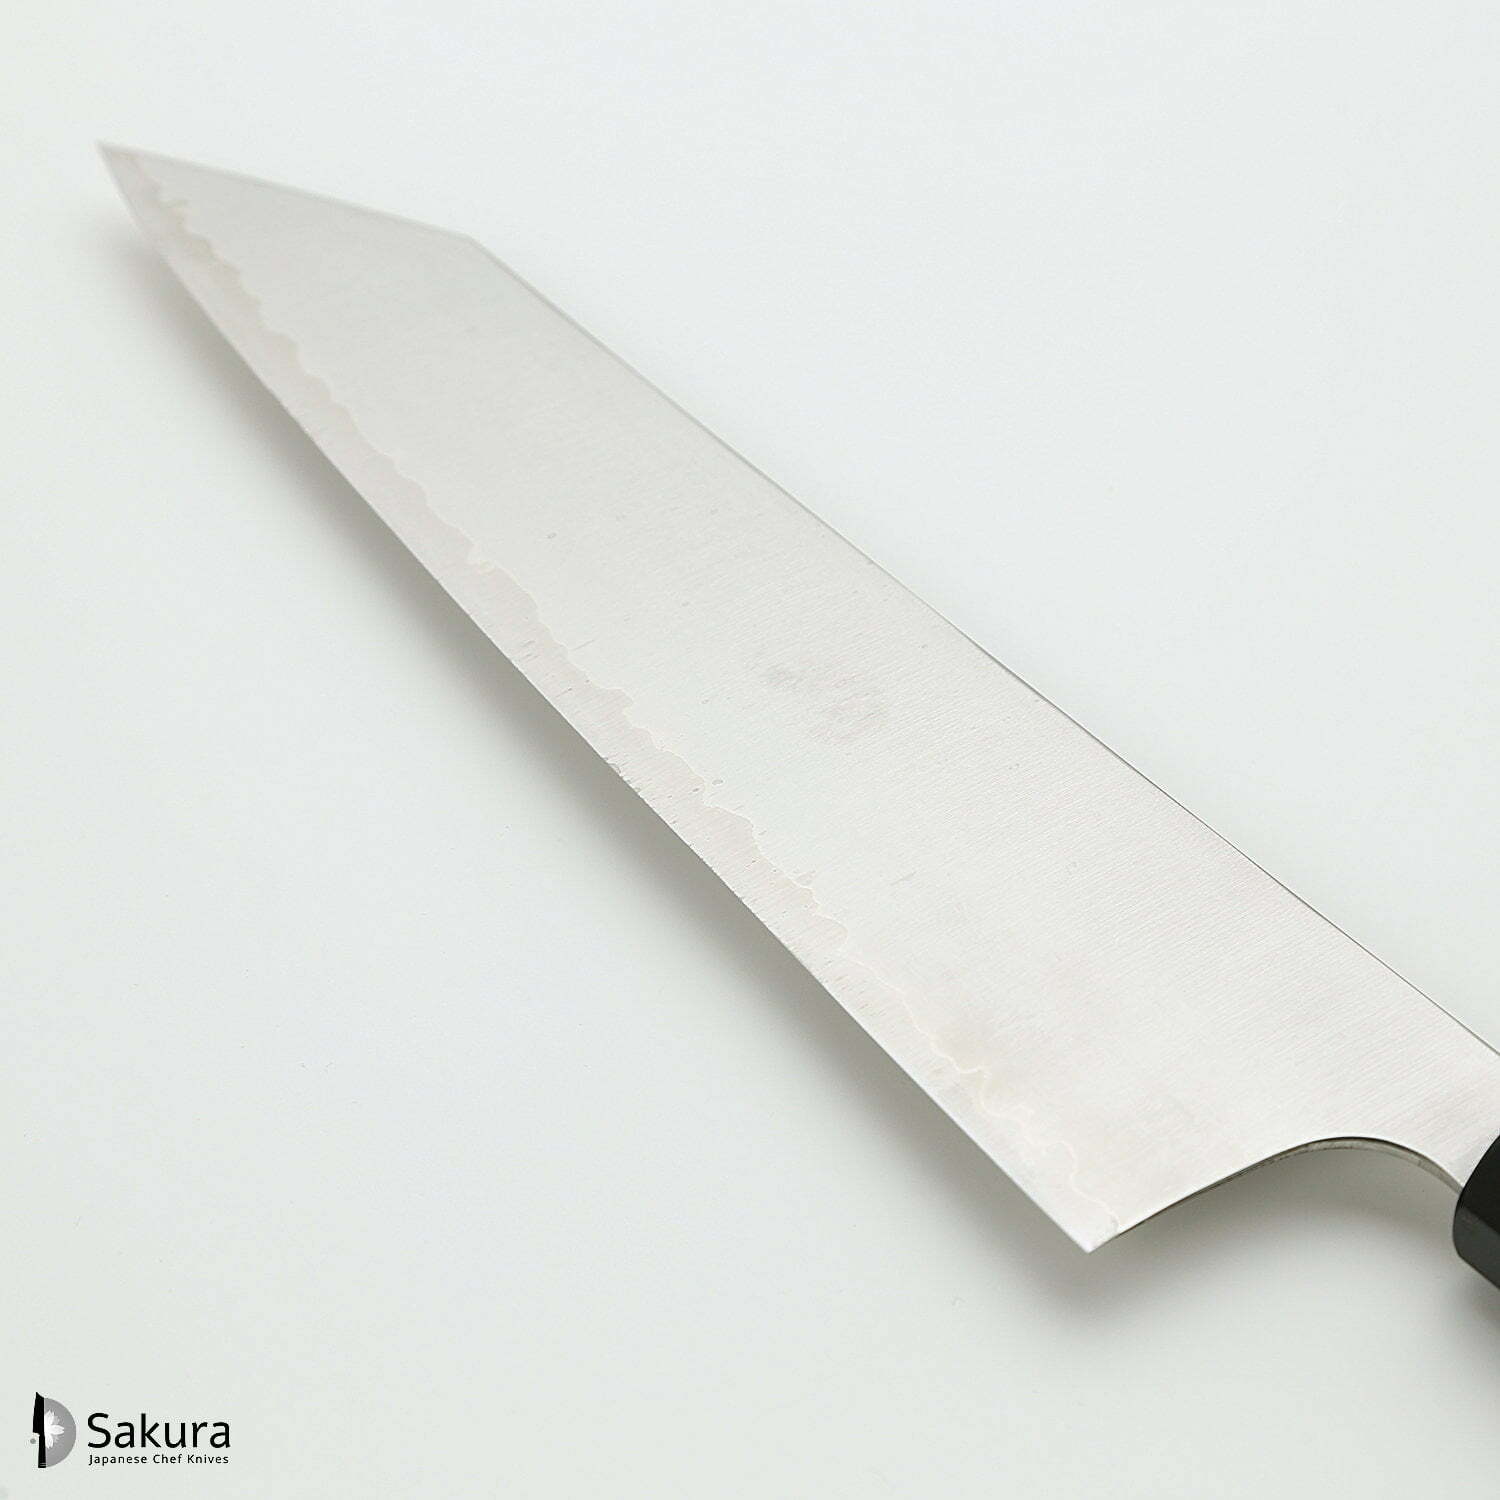 סכין שף רב-תכליתית קִּירִיצוּקֶה גִּיוּטוֹ 240מ״מ מחושלת בעבודת יד 3 שכבות: פלדת פחמן יפנית מתקדמת מסוג HAP40 עטופה פלדת אל-חלד גימור מט מלוטש האטסו קוקורו יפן